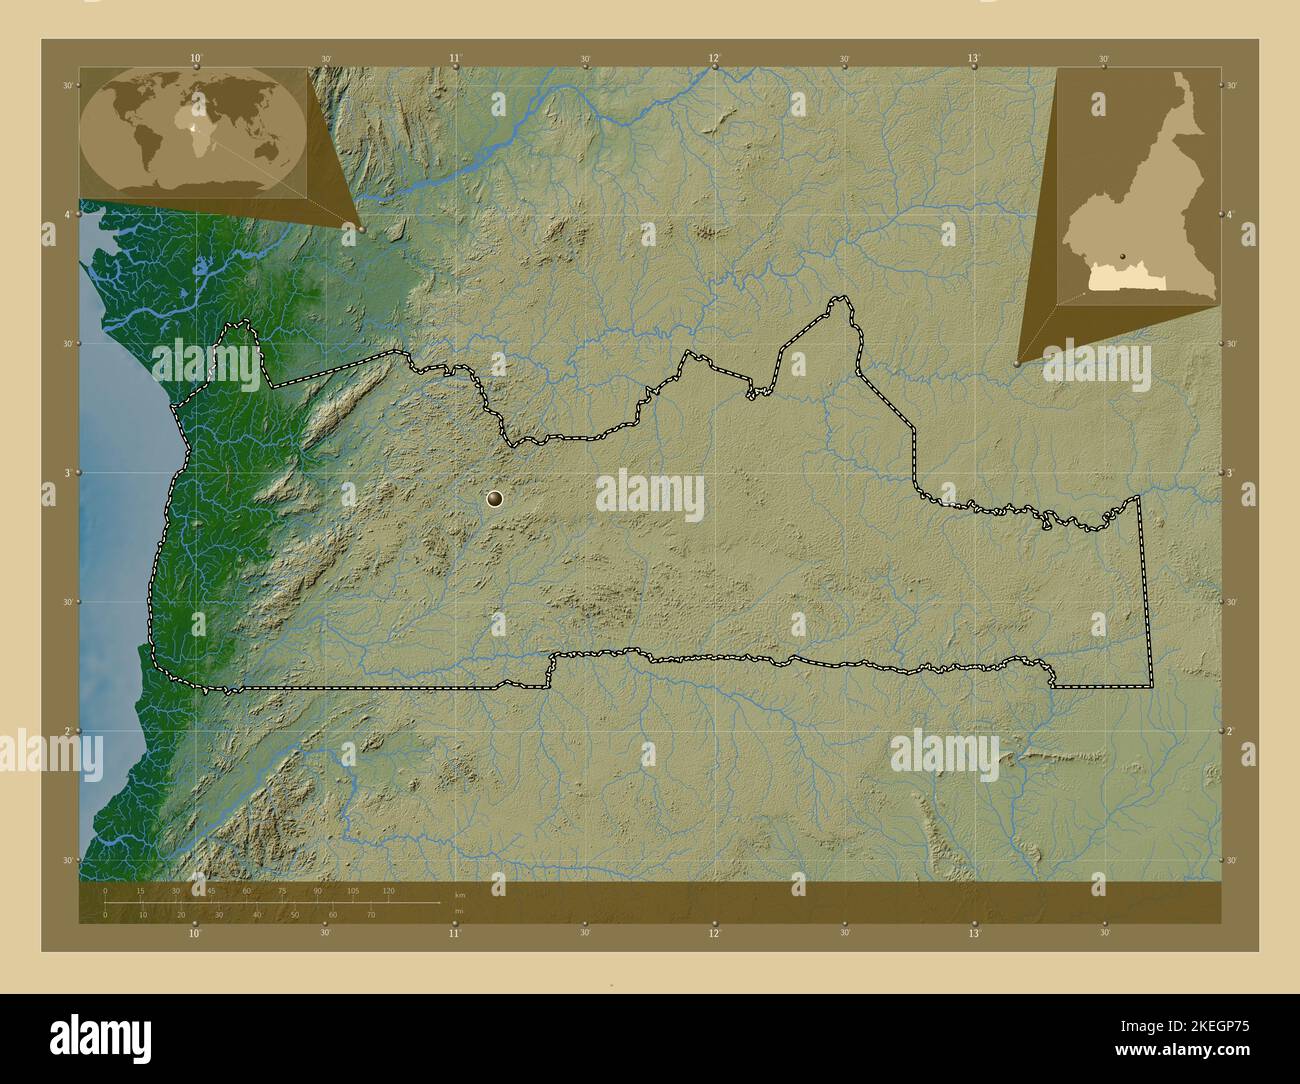 Sud, région du Cameroun. Carte d'altitude en couleur avec lacs et rivières. Cartes d'emplacement auxiliaire d'angle Banque D'Images